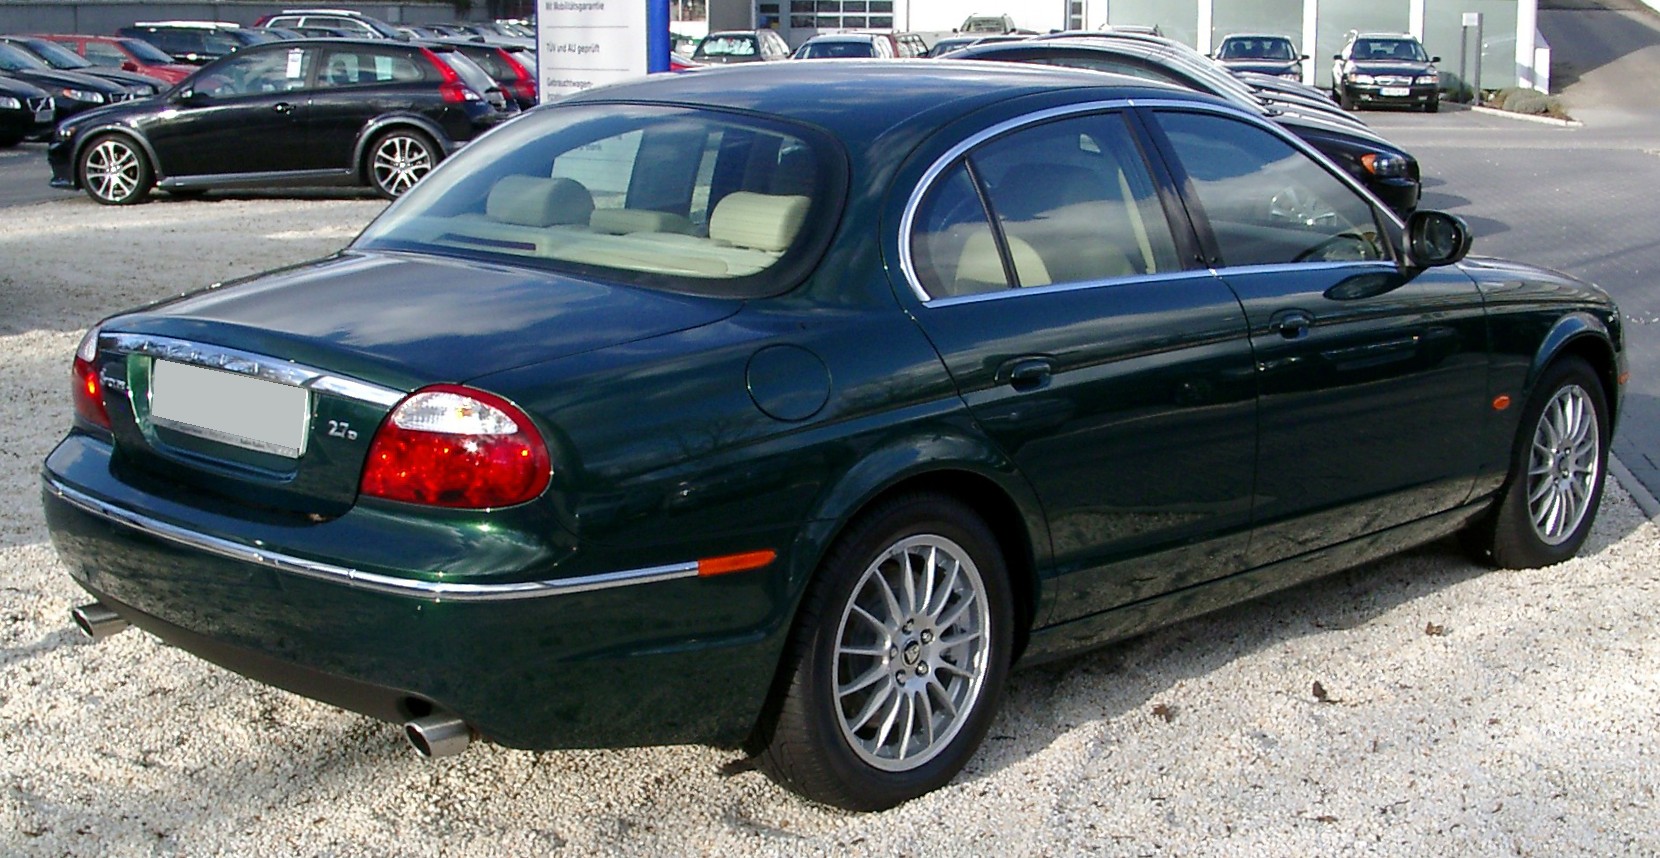 File:Jaguar S-Type rear 20080202.jpg - Wikimedia Commons